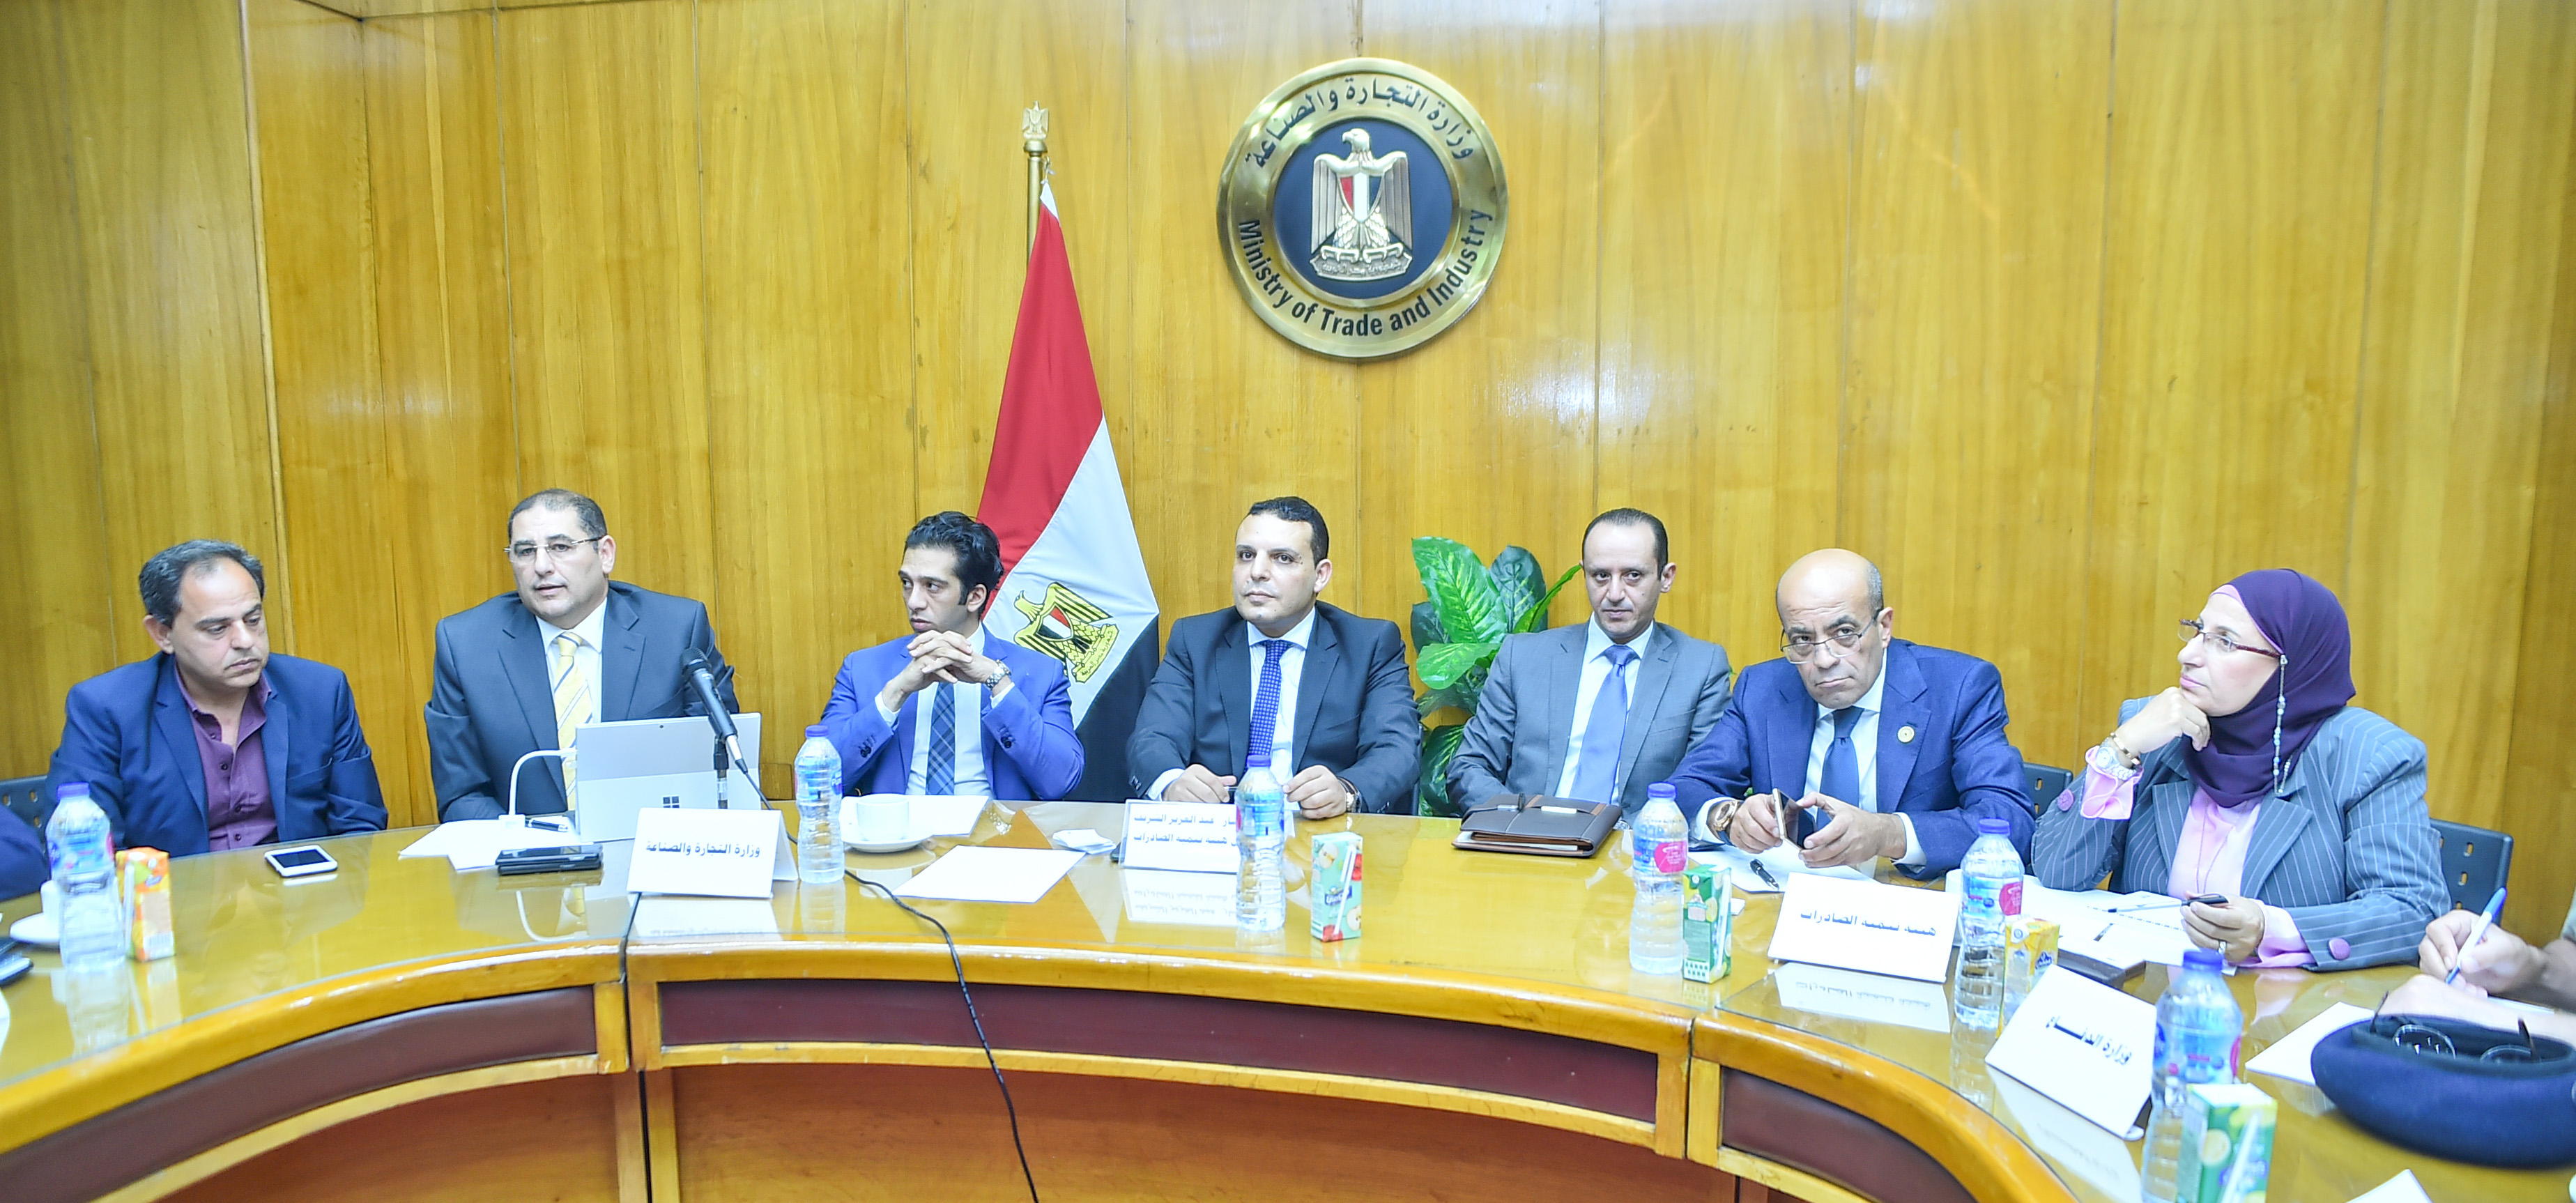   «التجارة والصناعة» تستضيف الاجتماع الأول للجنة الوطنية التنسيقية لتنظيم المشاركة المصرية بمعرض اكسبو دبى 2020